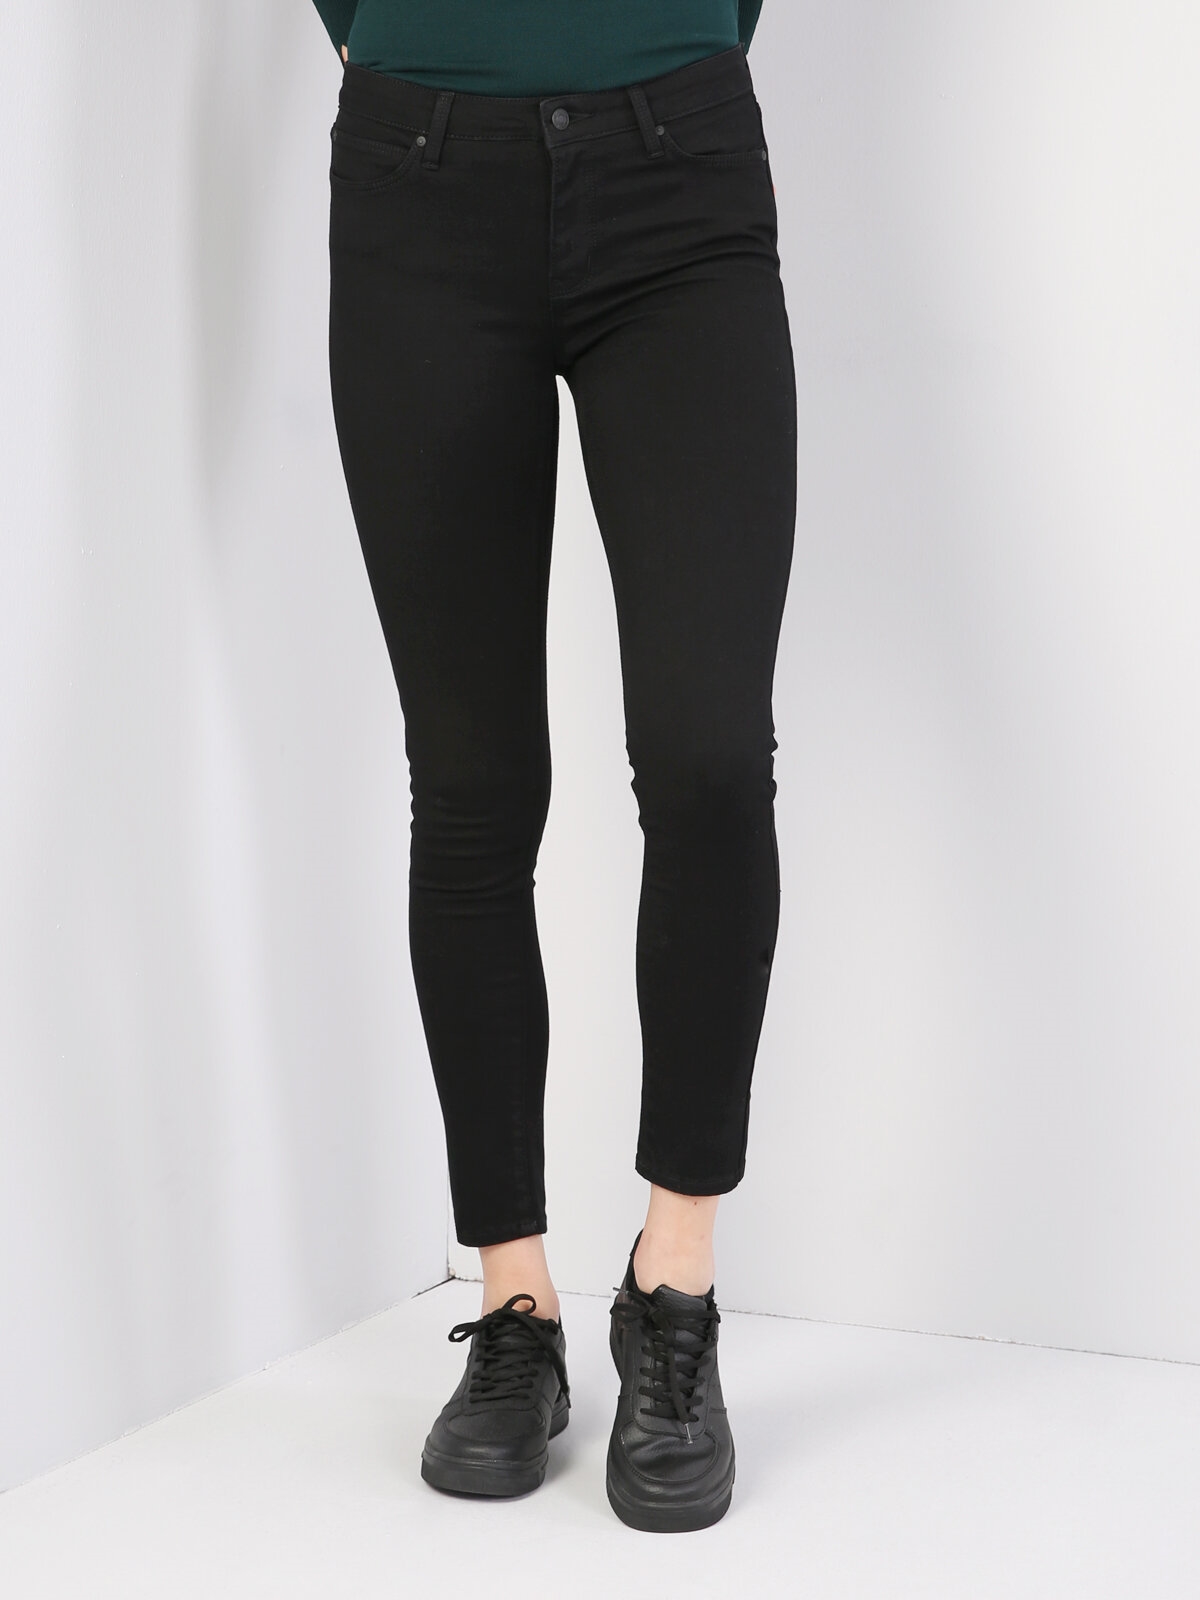 Afficher les détails de 759 Lara Pantalon En Jean Noir Taille Moyenne À Jambe Étroite Et Coupe Super Slim Pour Femme